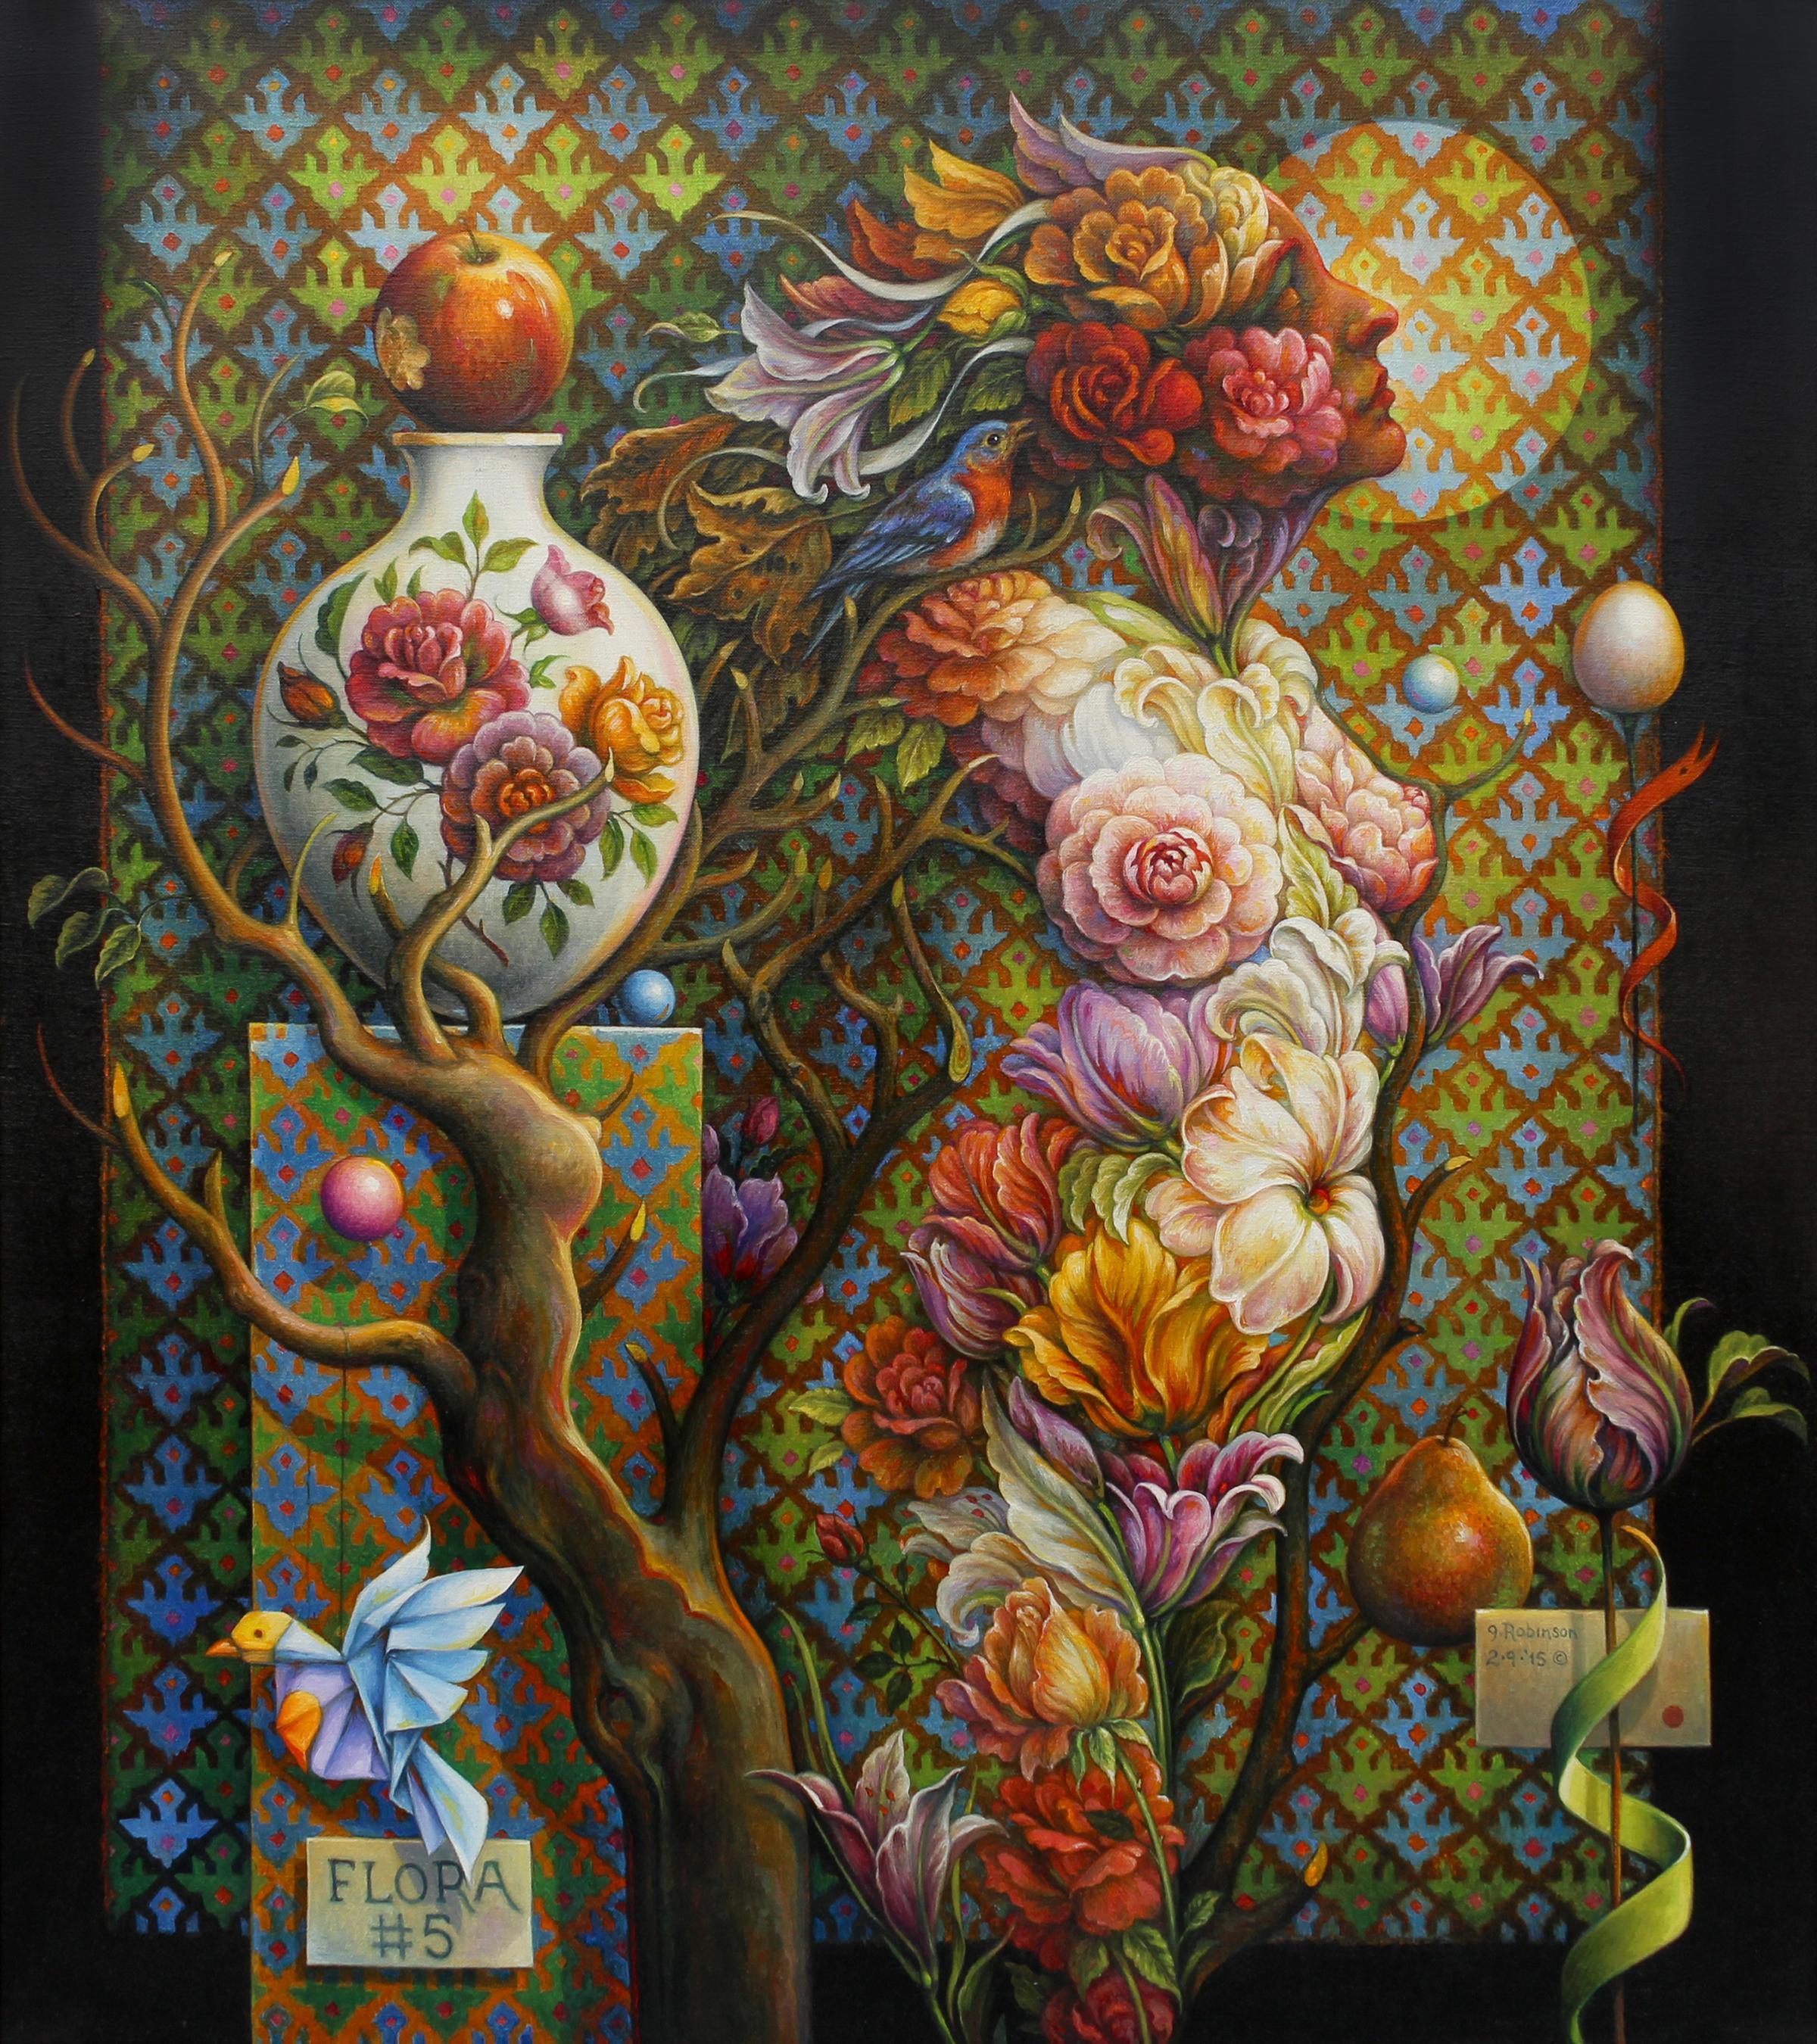 ""Floral #5" - Peinture géométrique surréaliste - Nu - Arcimboldo